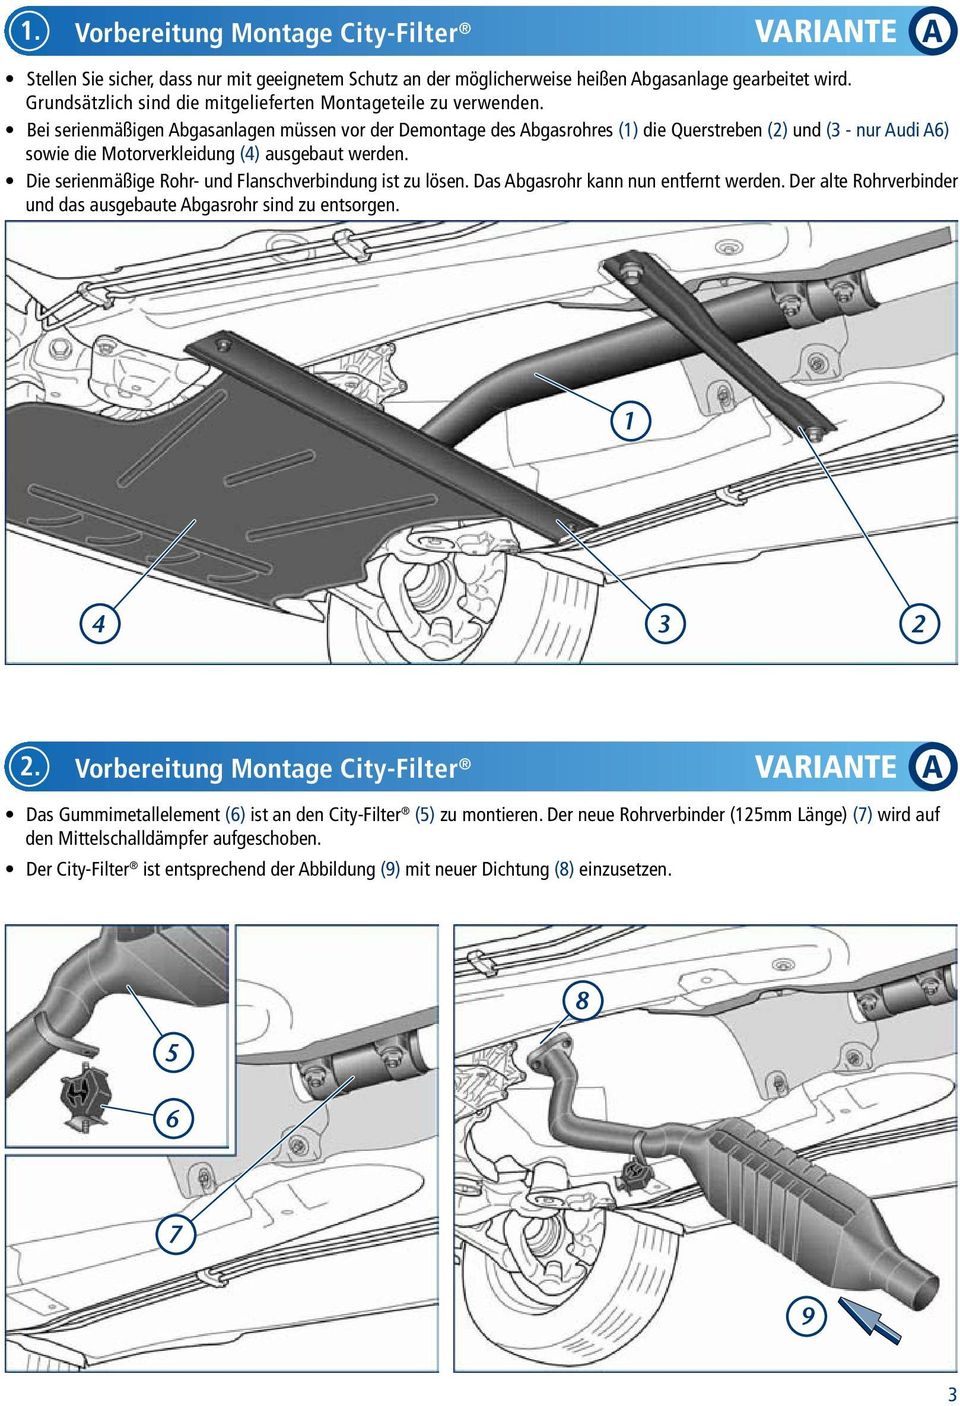 Bei serienmäßigen Abgasanlagen müssen vor der Demontage des Abgasrohres (1) die Querstreben (2) und (3 - nur Audi A6) sowie die Motorverkleidung (4) ausgebaut werden.